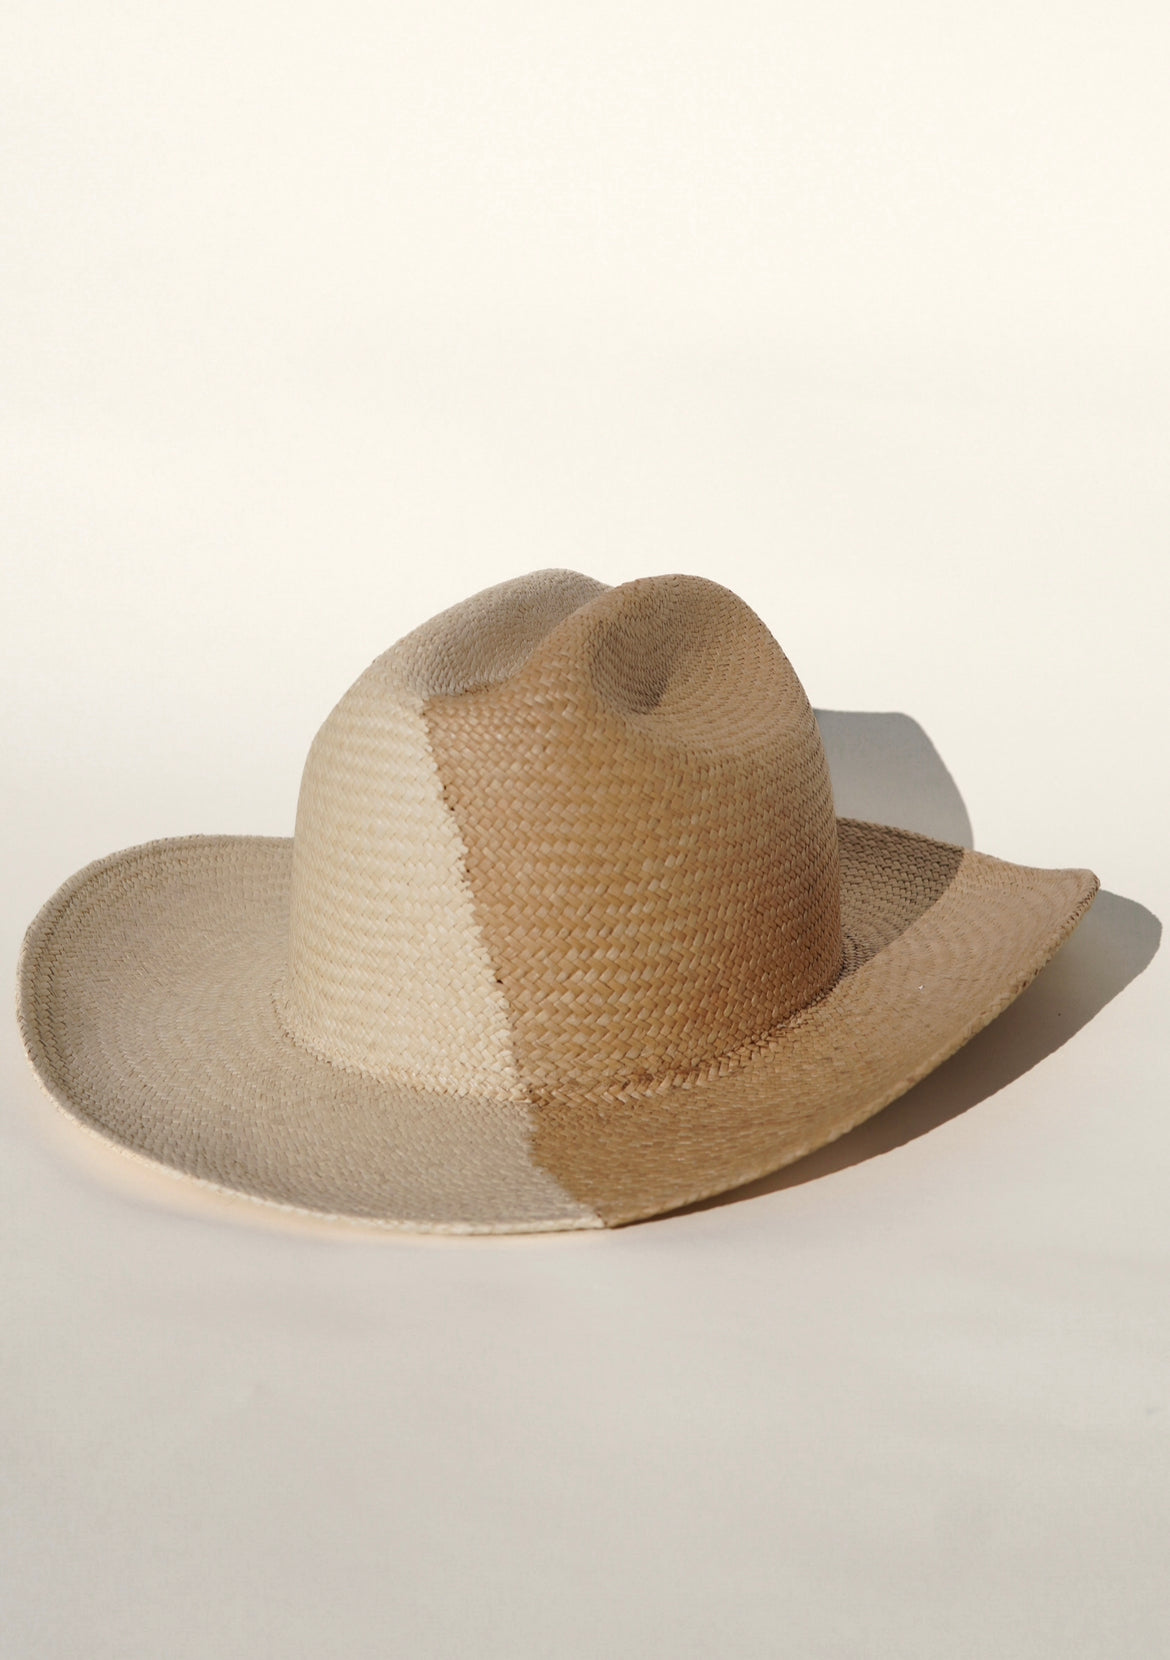 Bonnie - Two Toned Cowboy / Western Hat